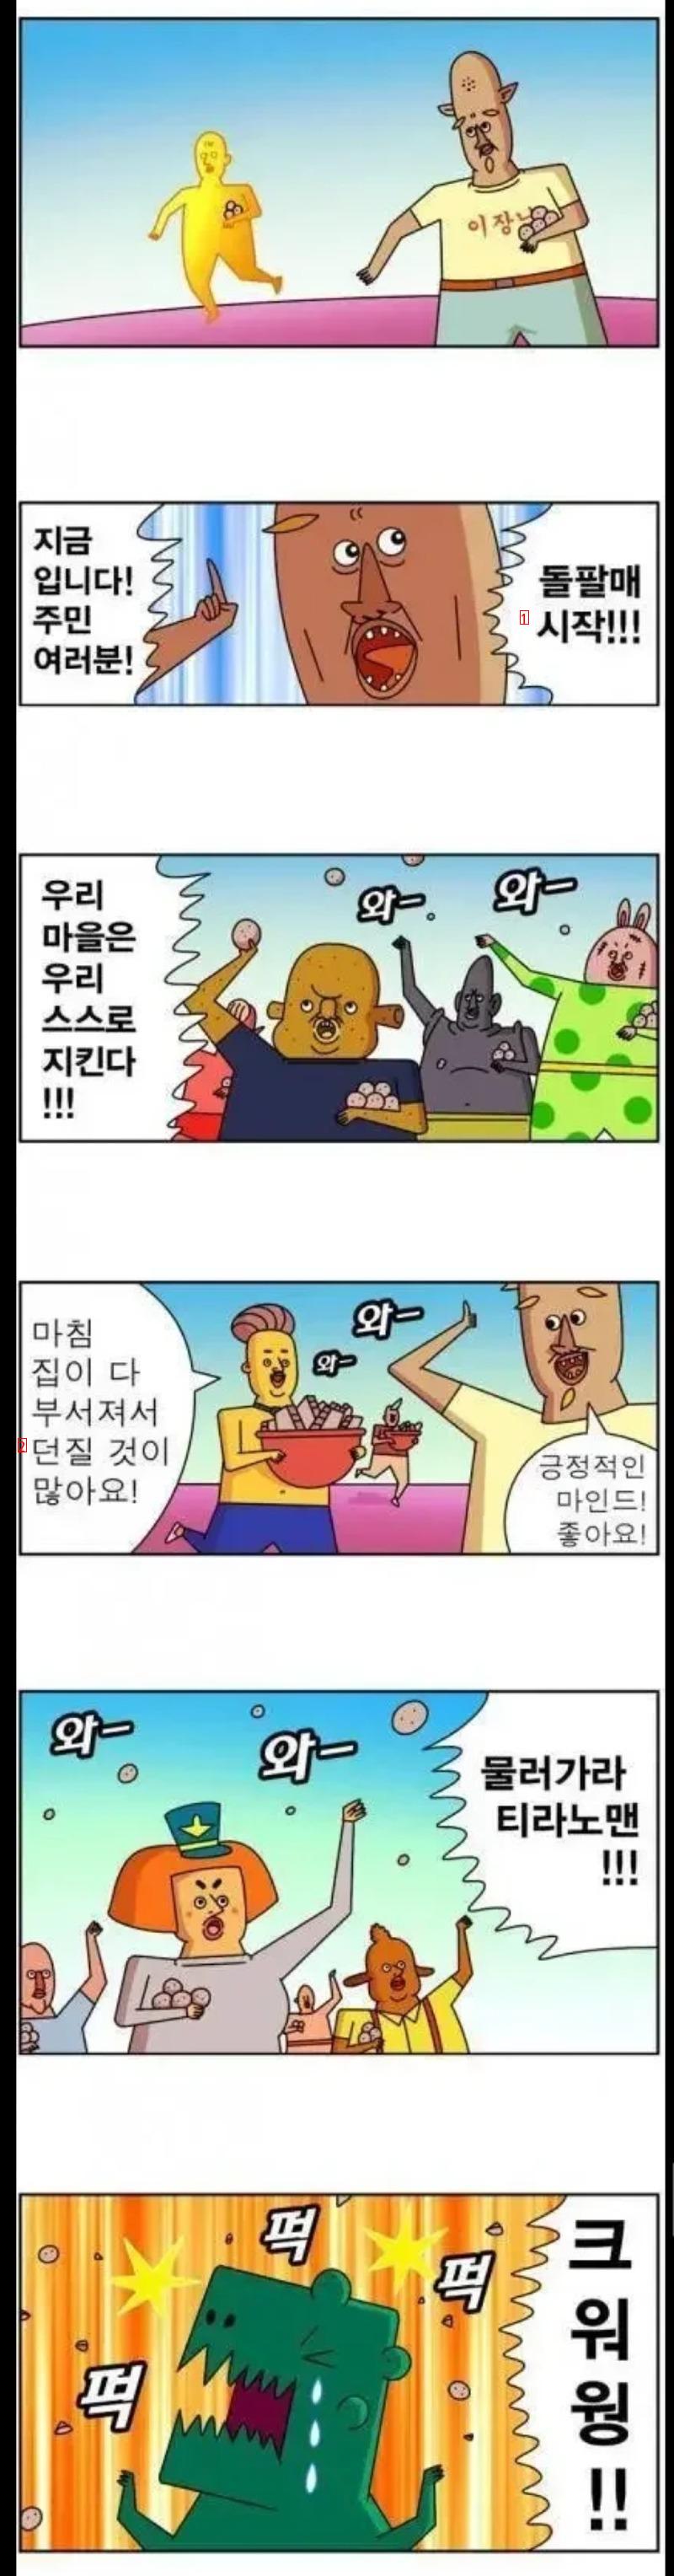 미친 결말의 웹툰(feat.귀귀)